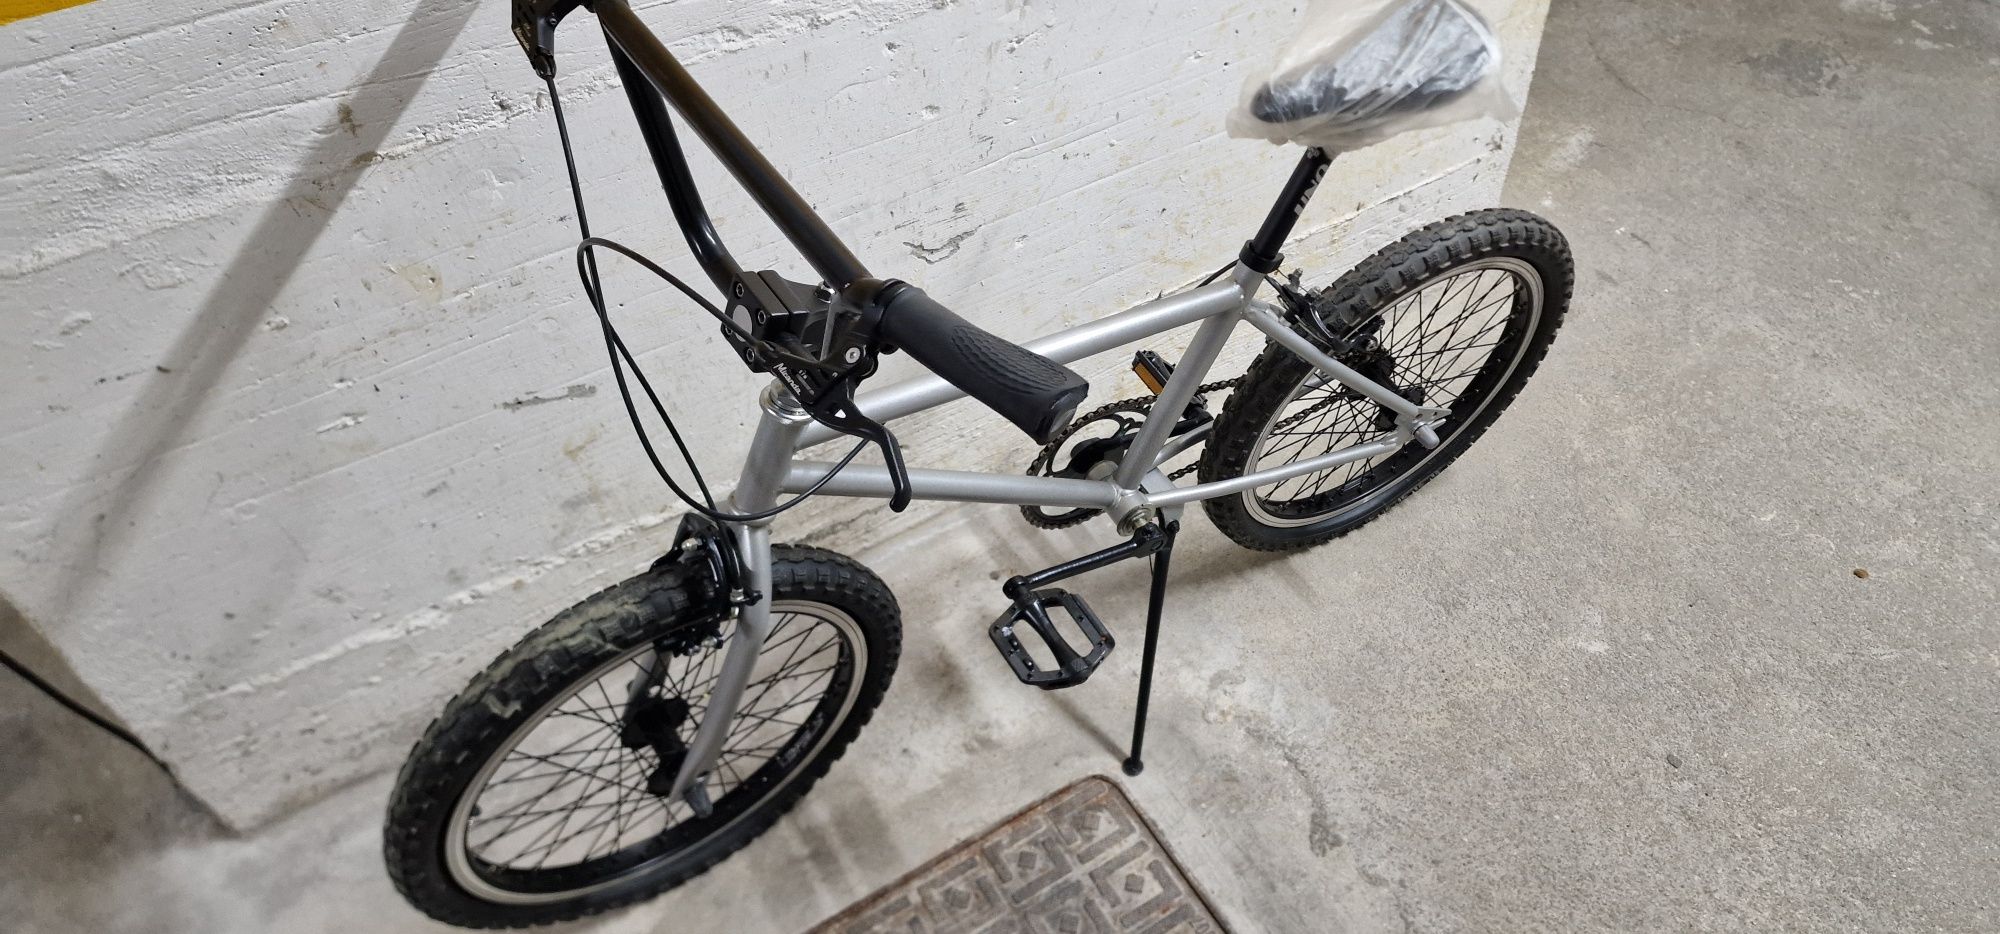 Bicicleta BMX Restaurada (Nova)